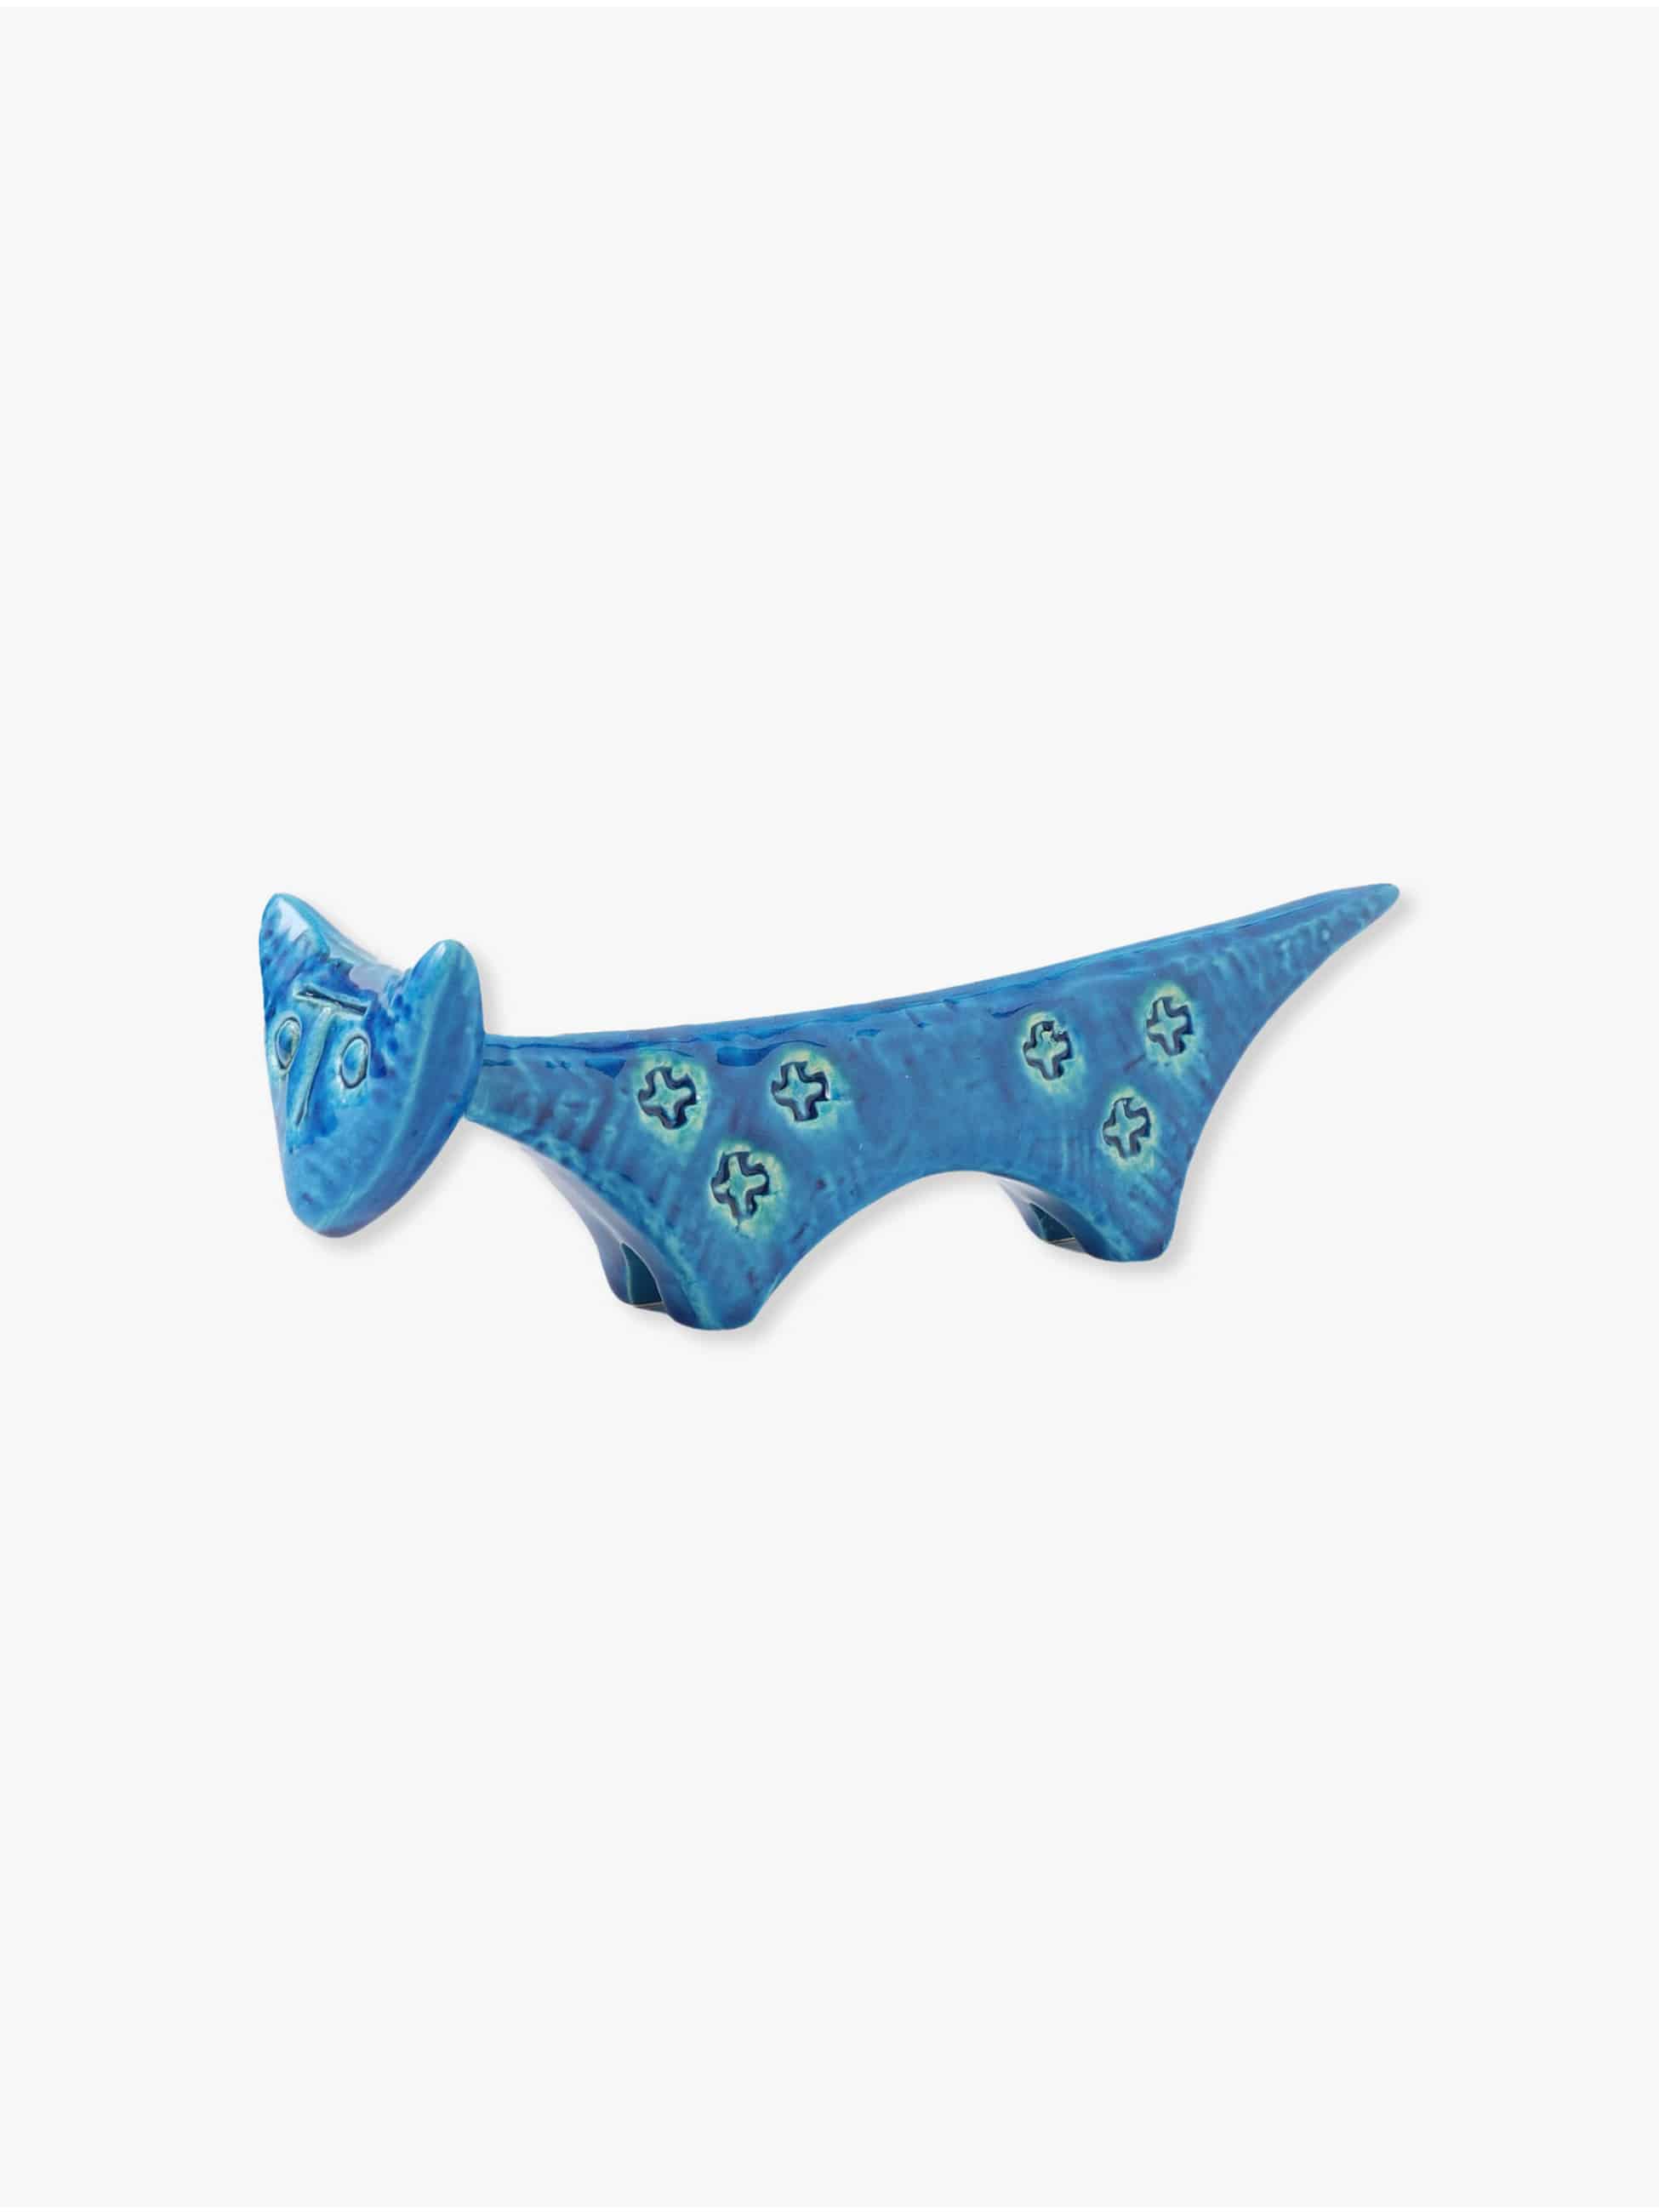 Cat Ceramic Figure 詳細画像 blue 2